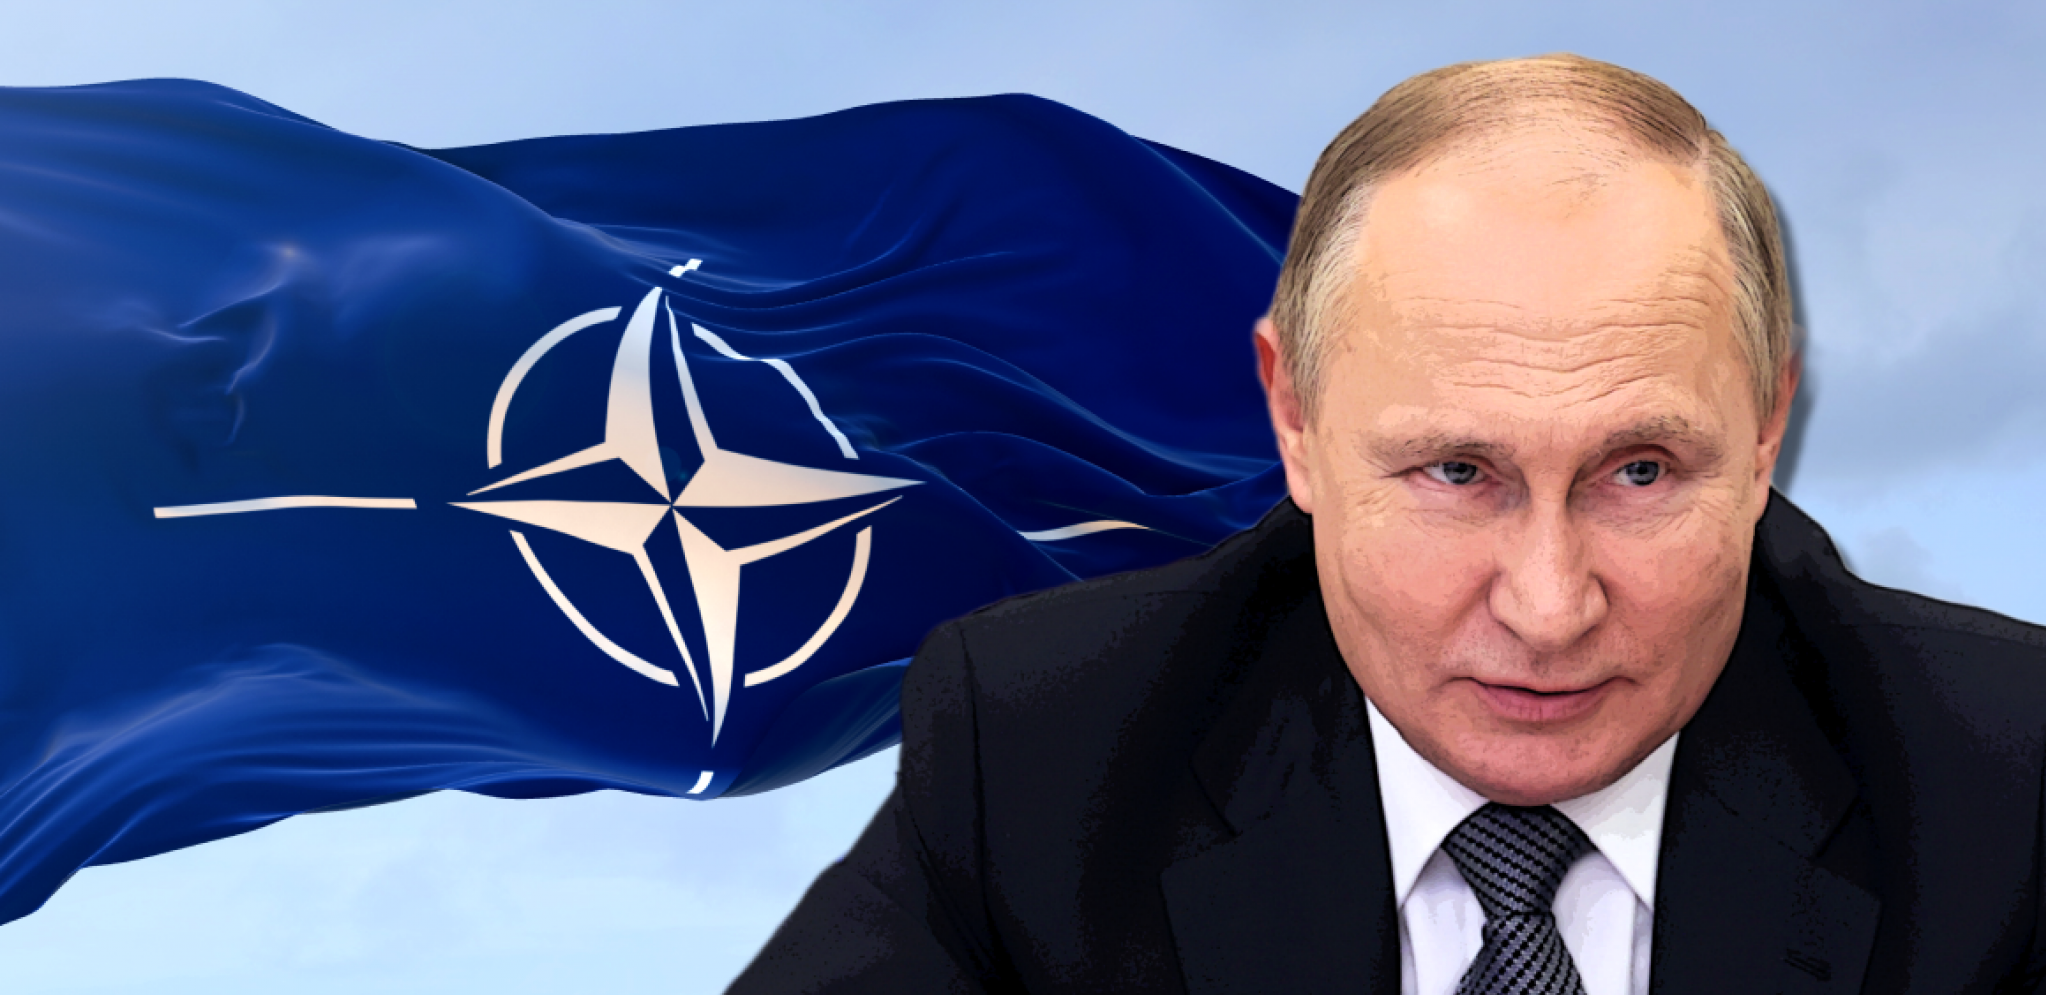 "RUSIJA IMA 'TROJANSKOG KONJA' U NATO" Zapad van sebe zbog saveznika koji pomaže Putinu da zaobiđe sankcije